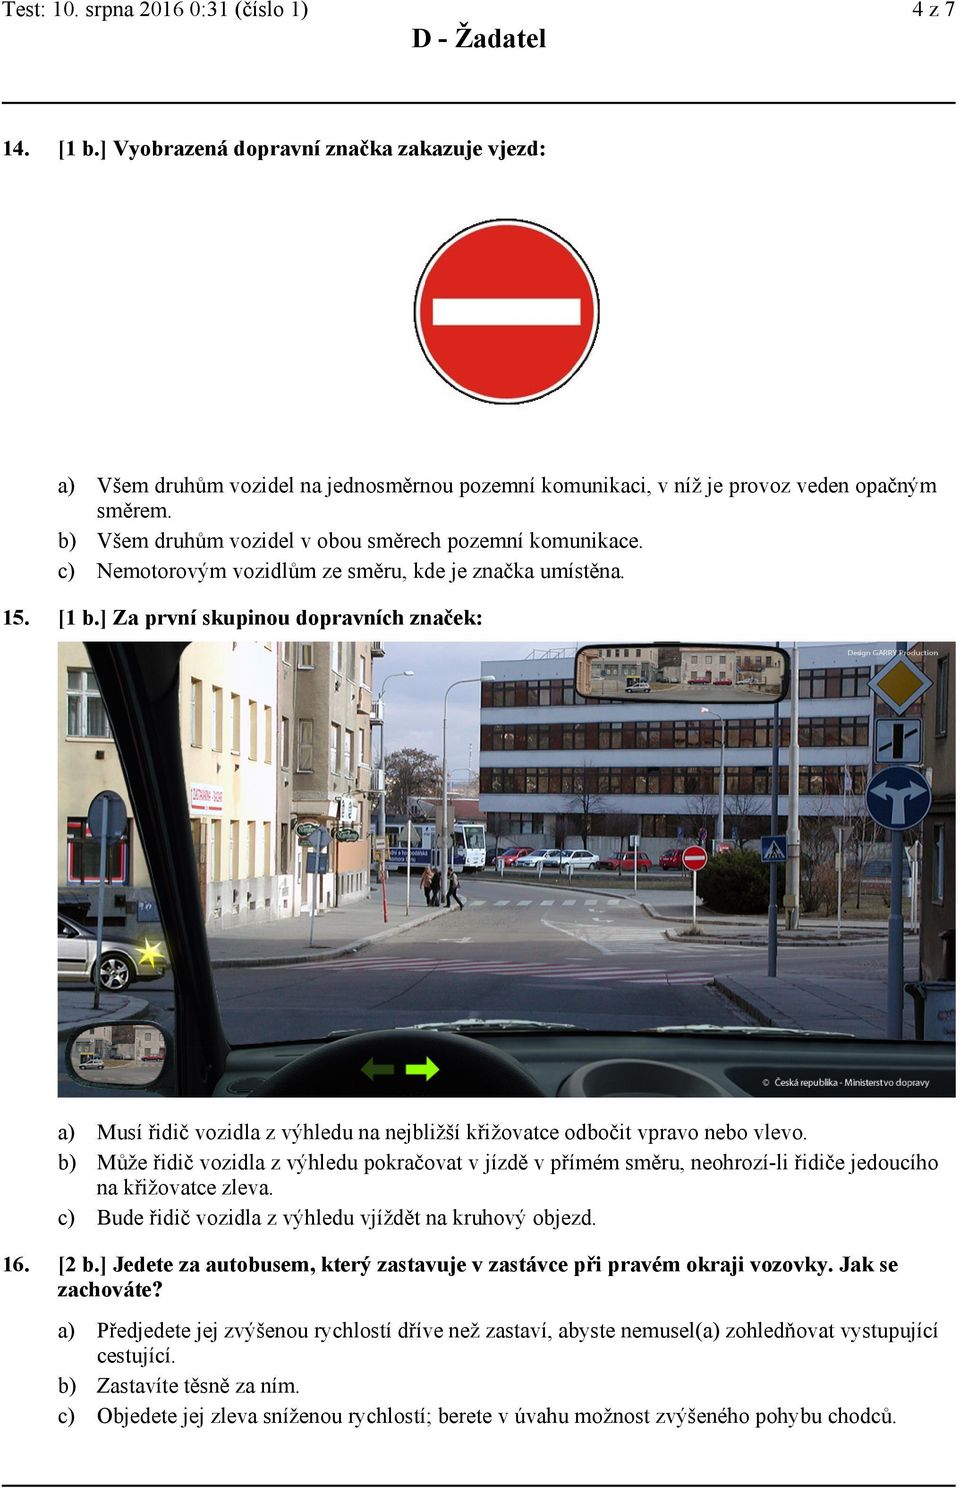 ] Za první skupinou dopravních značek: Musí řidič vozidla z výhledu na nejbližší křižovatce odbočit vpravo nebo vlevo.